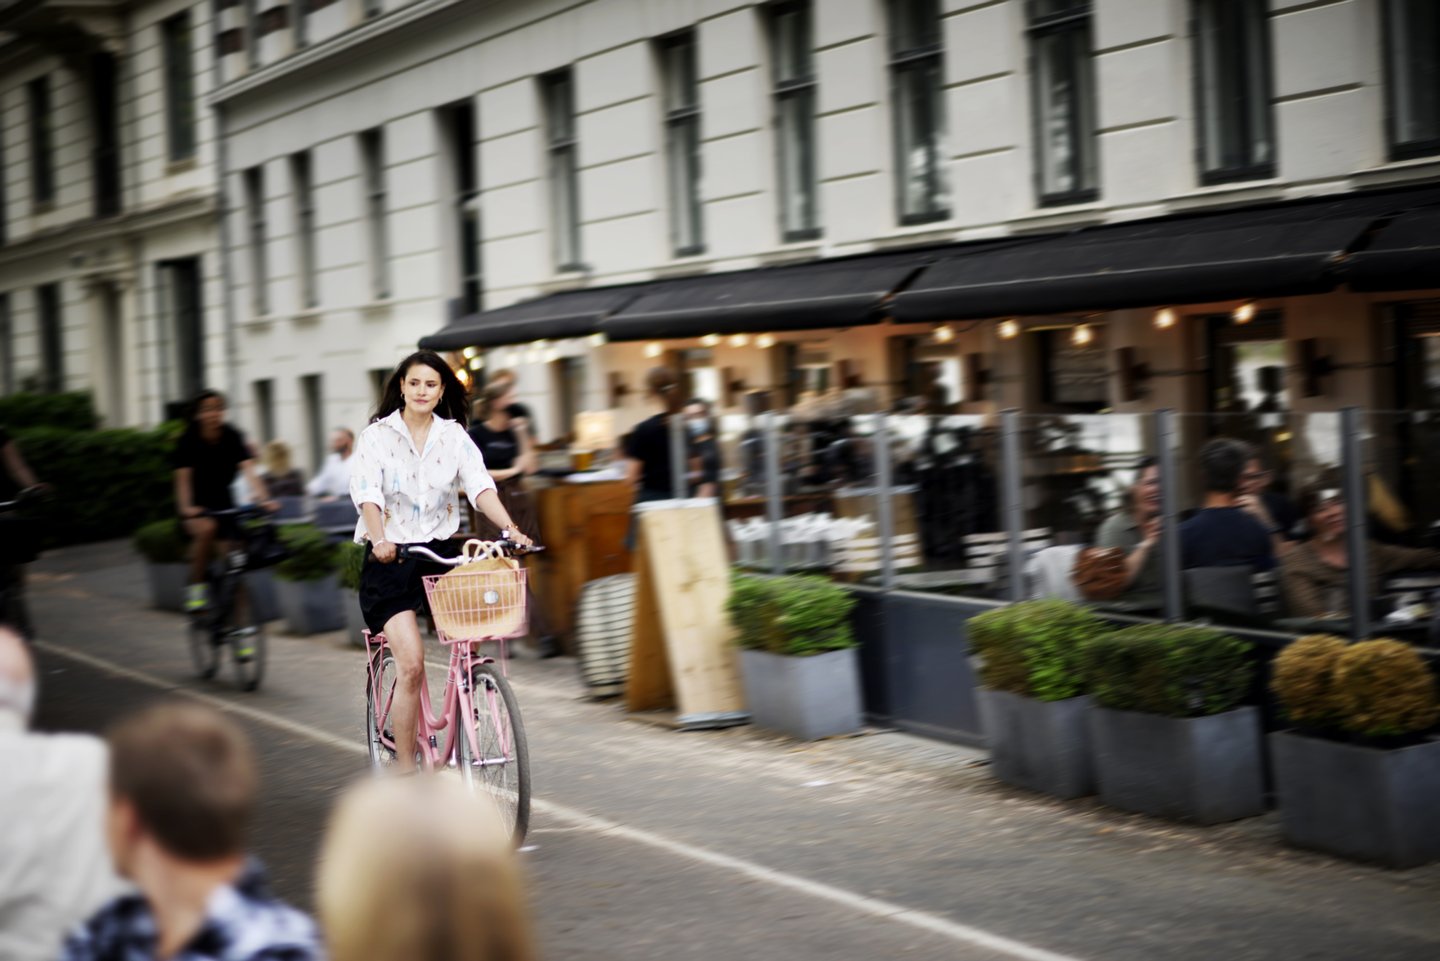 Afstemning sofistikeret discolor Oplev København på cykel | VisitCopenhagen